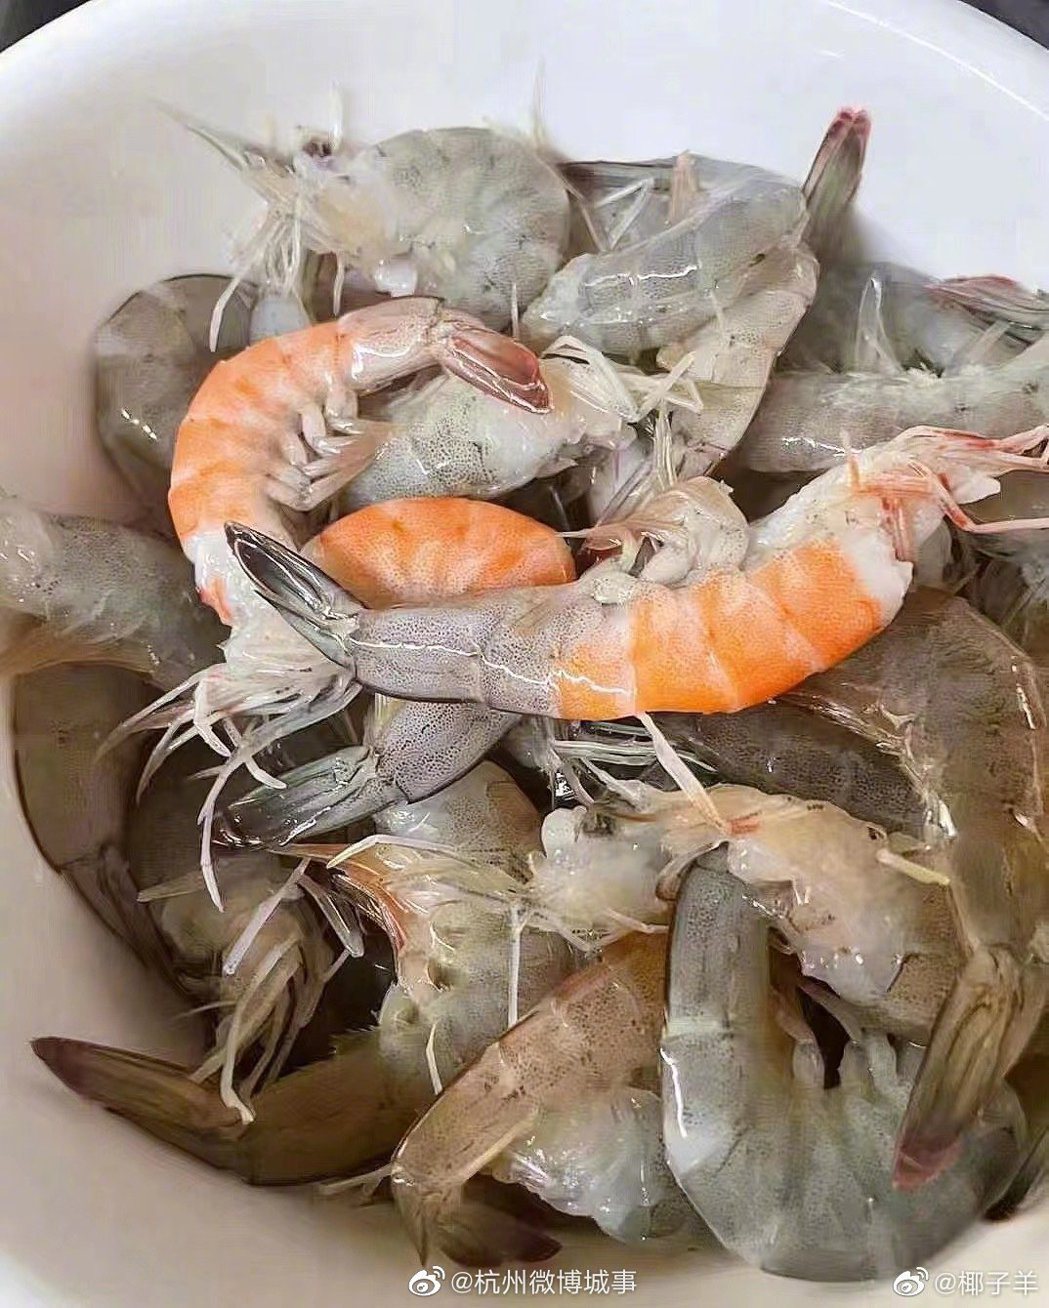 一名女子從市場買活蝦回家料理，到家打開塑膠袋驚見蝦子活活煮熟三隻。 (圖/取自微博「杭州微博城事」)